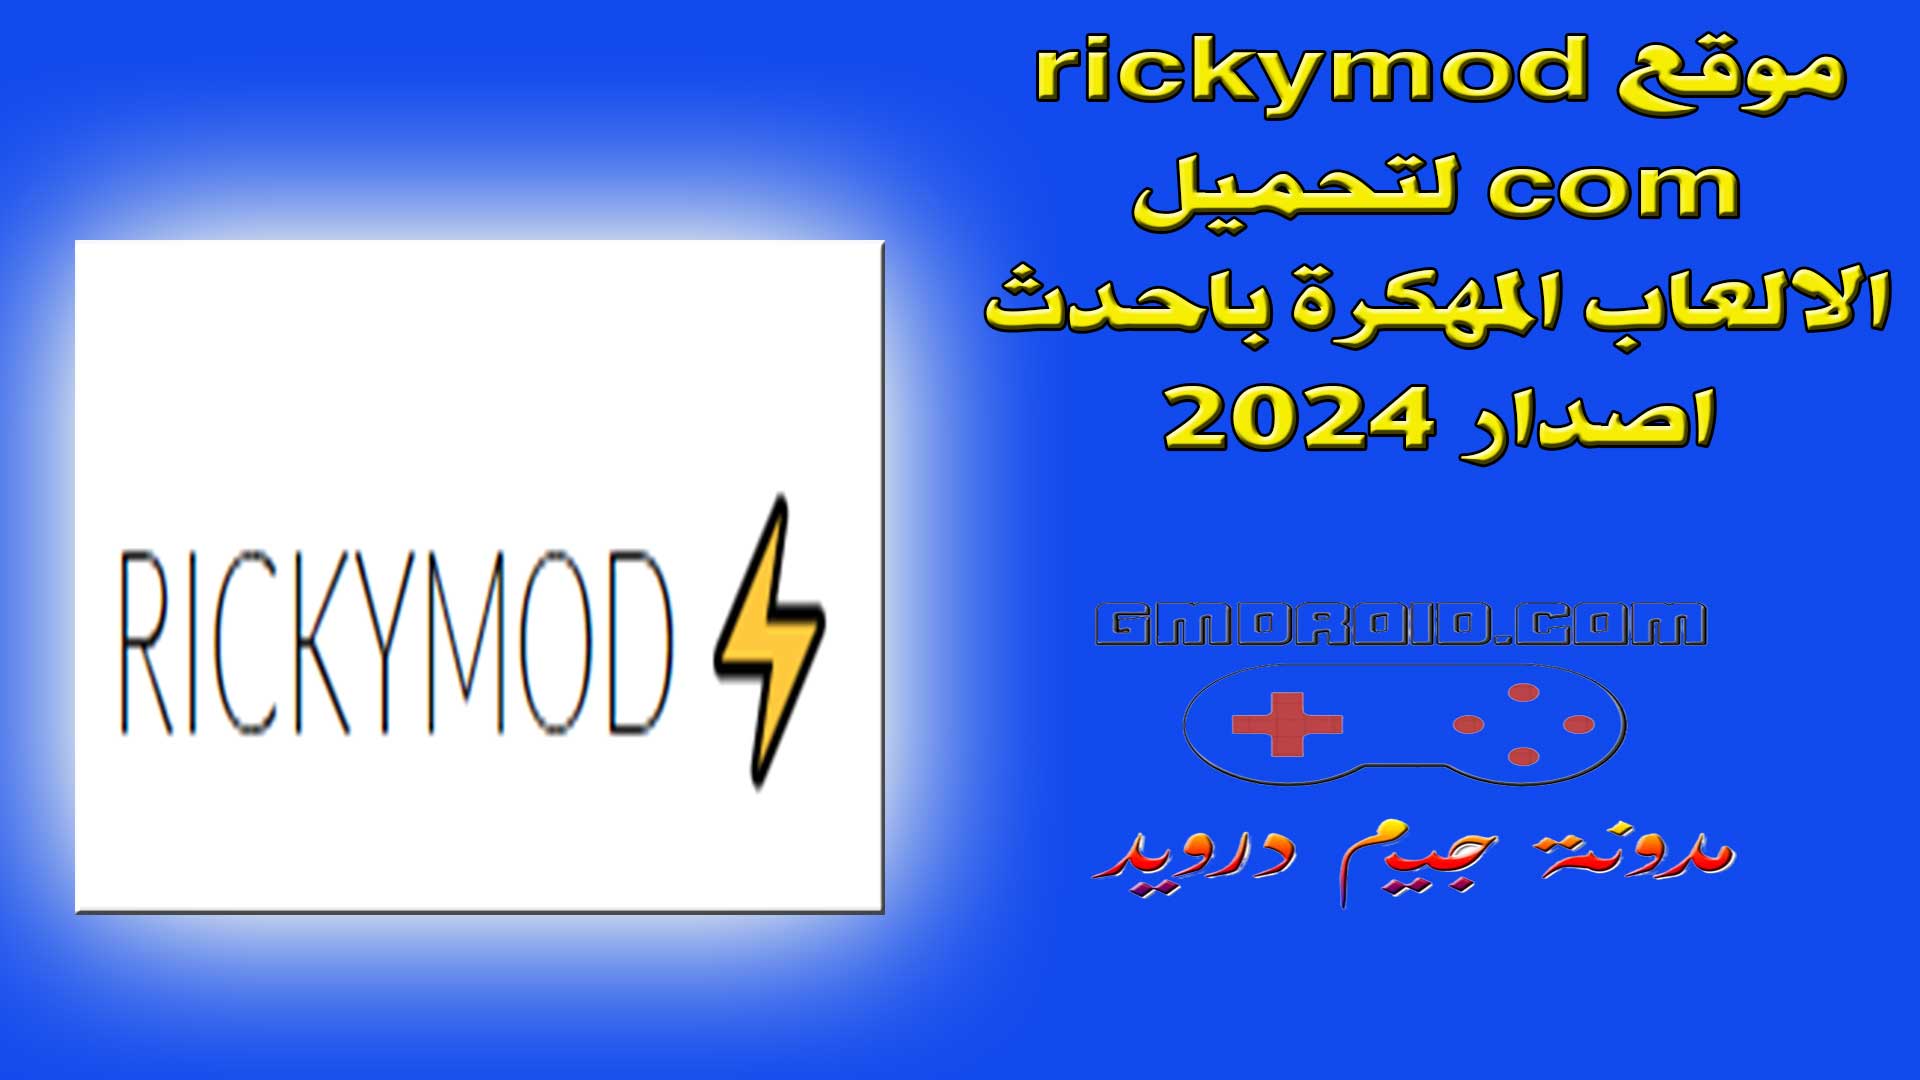 موقع rickymod com لتحميل الالعاب المهكرة باحدث اصدار 2024